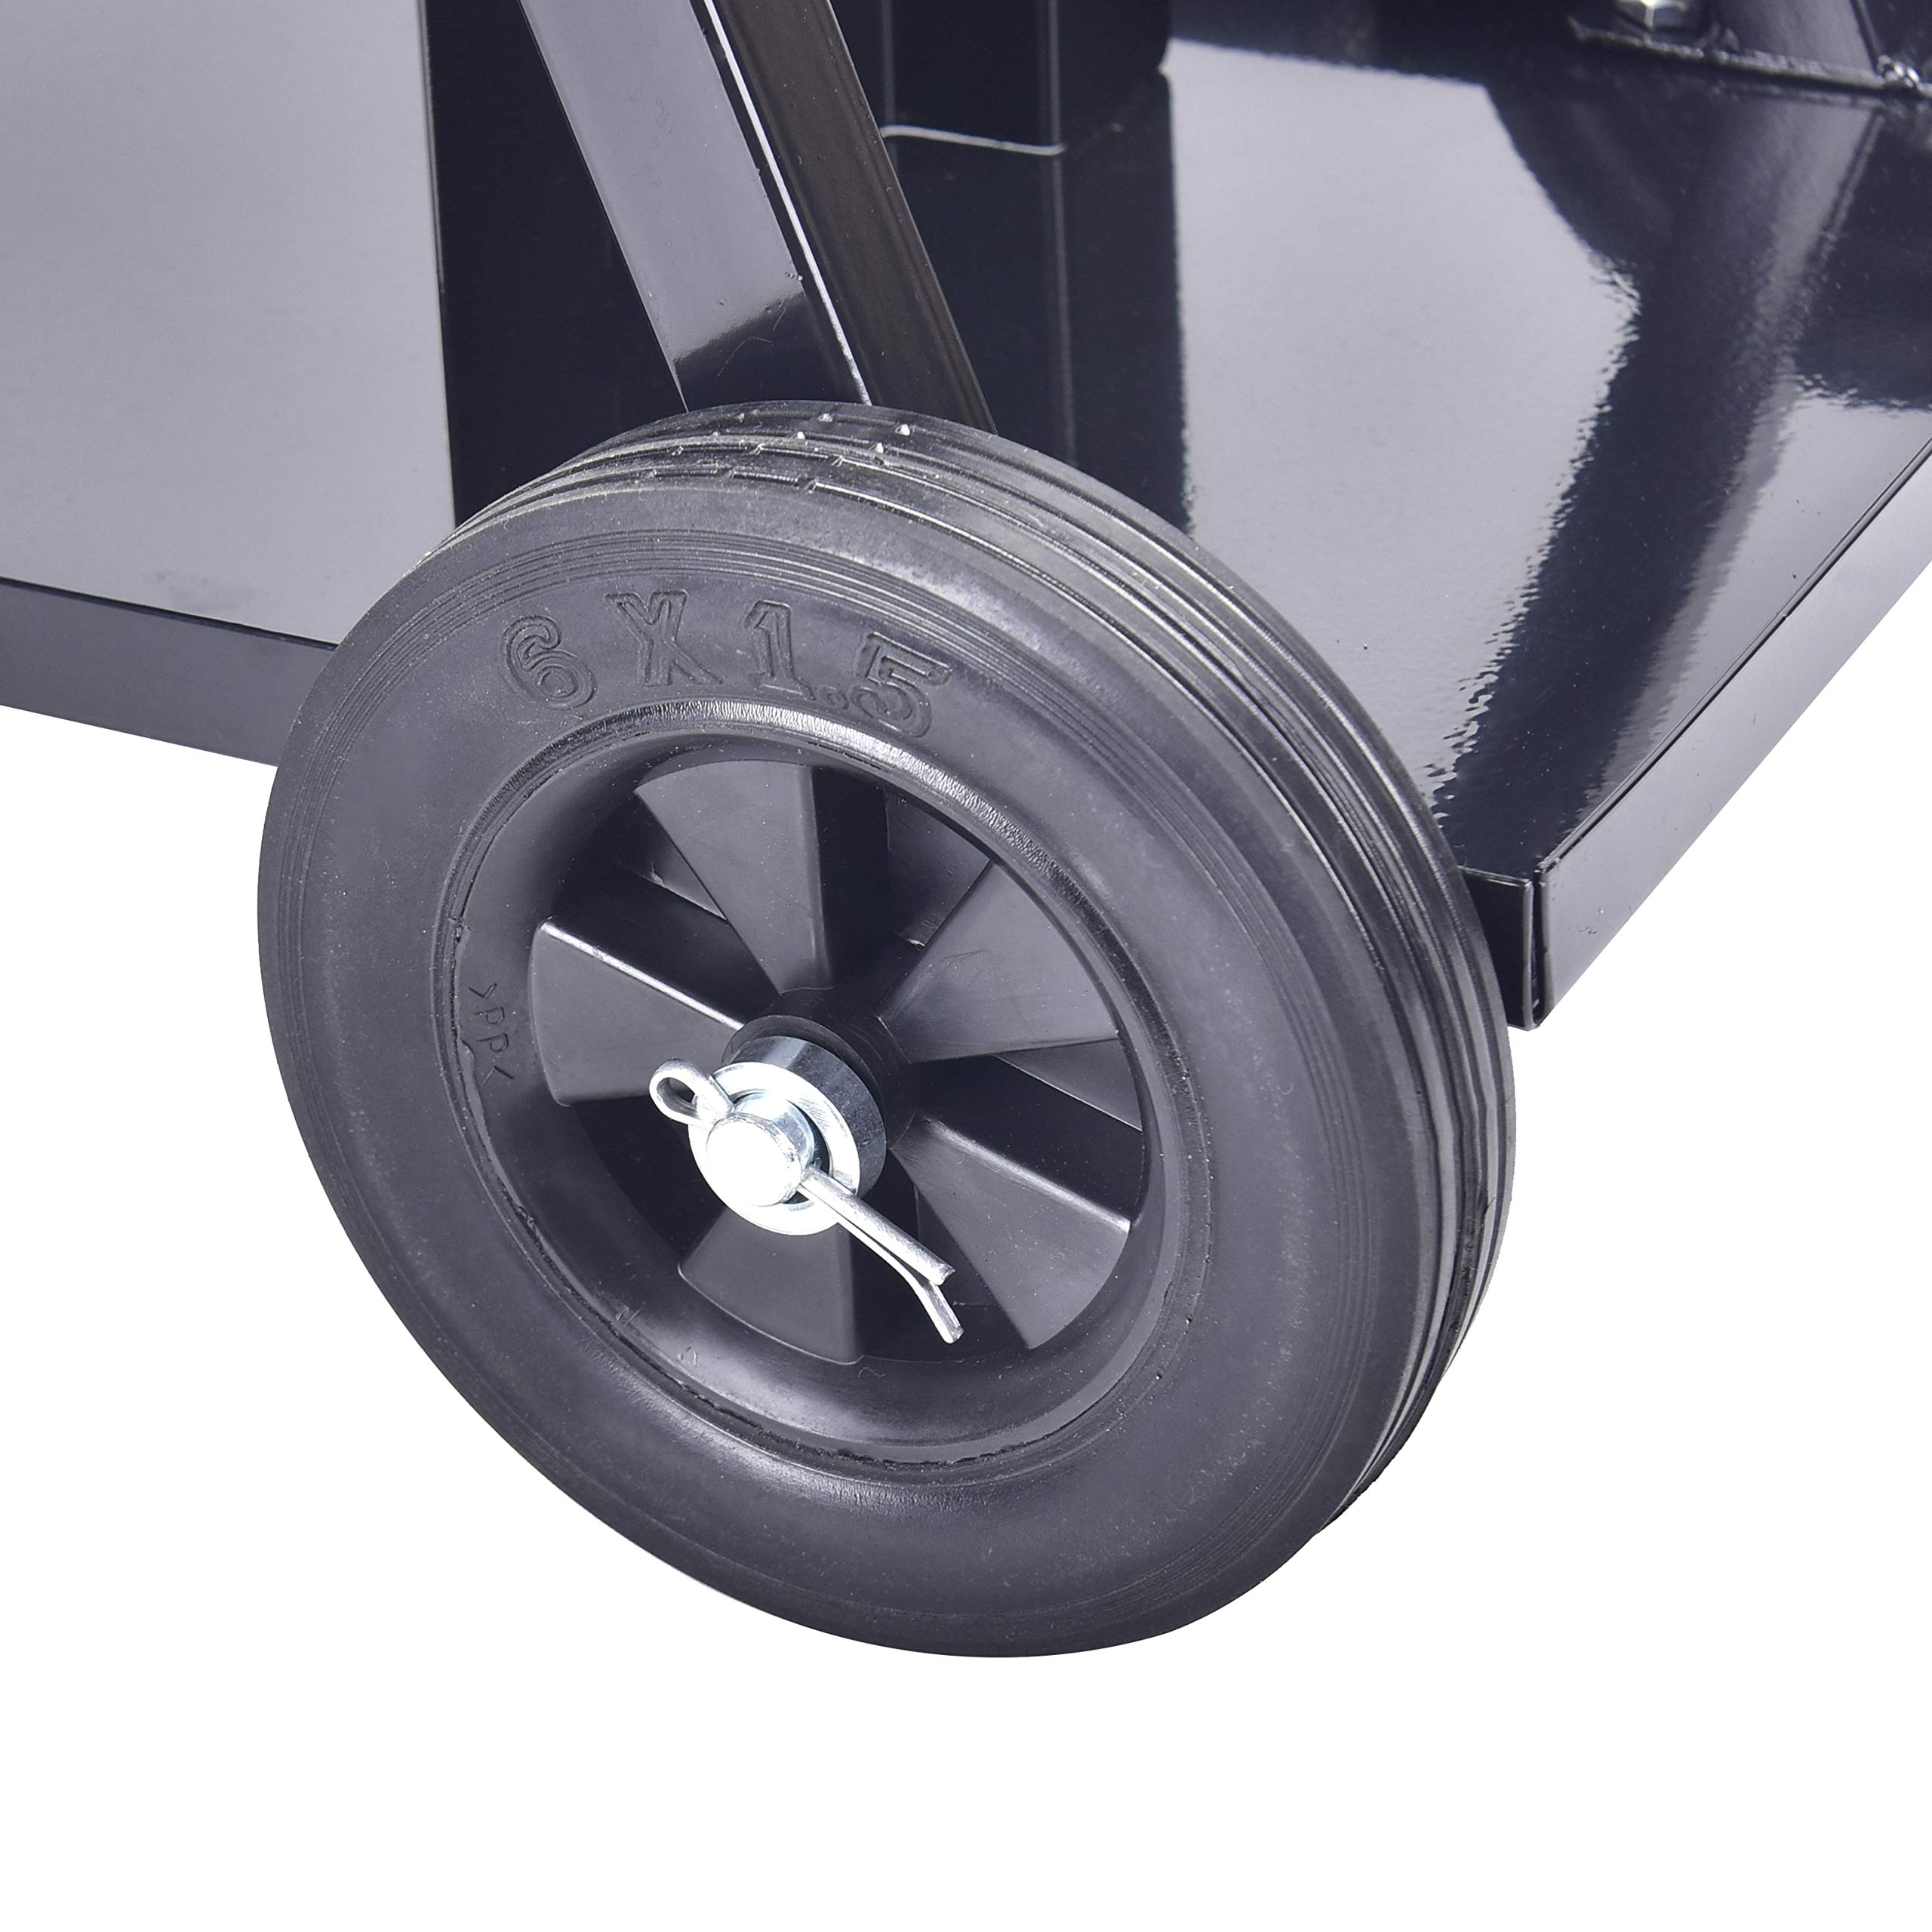 Universal MIG Welding Cart, Rolling Welding Cart with Wheels for TIG MIG Welder, 110Lbs Capacity,Black